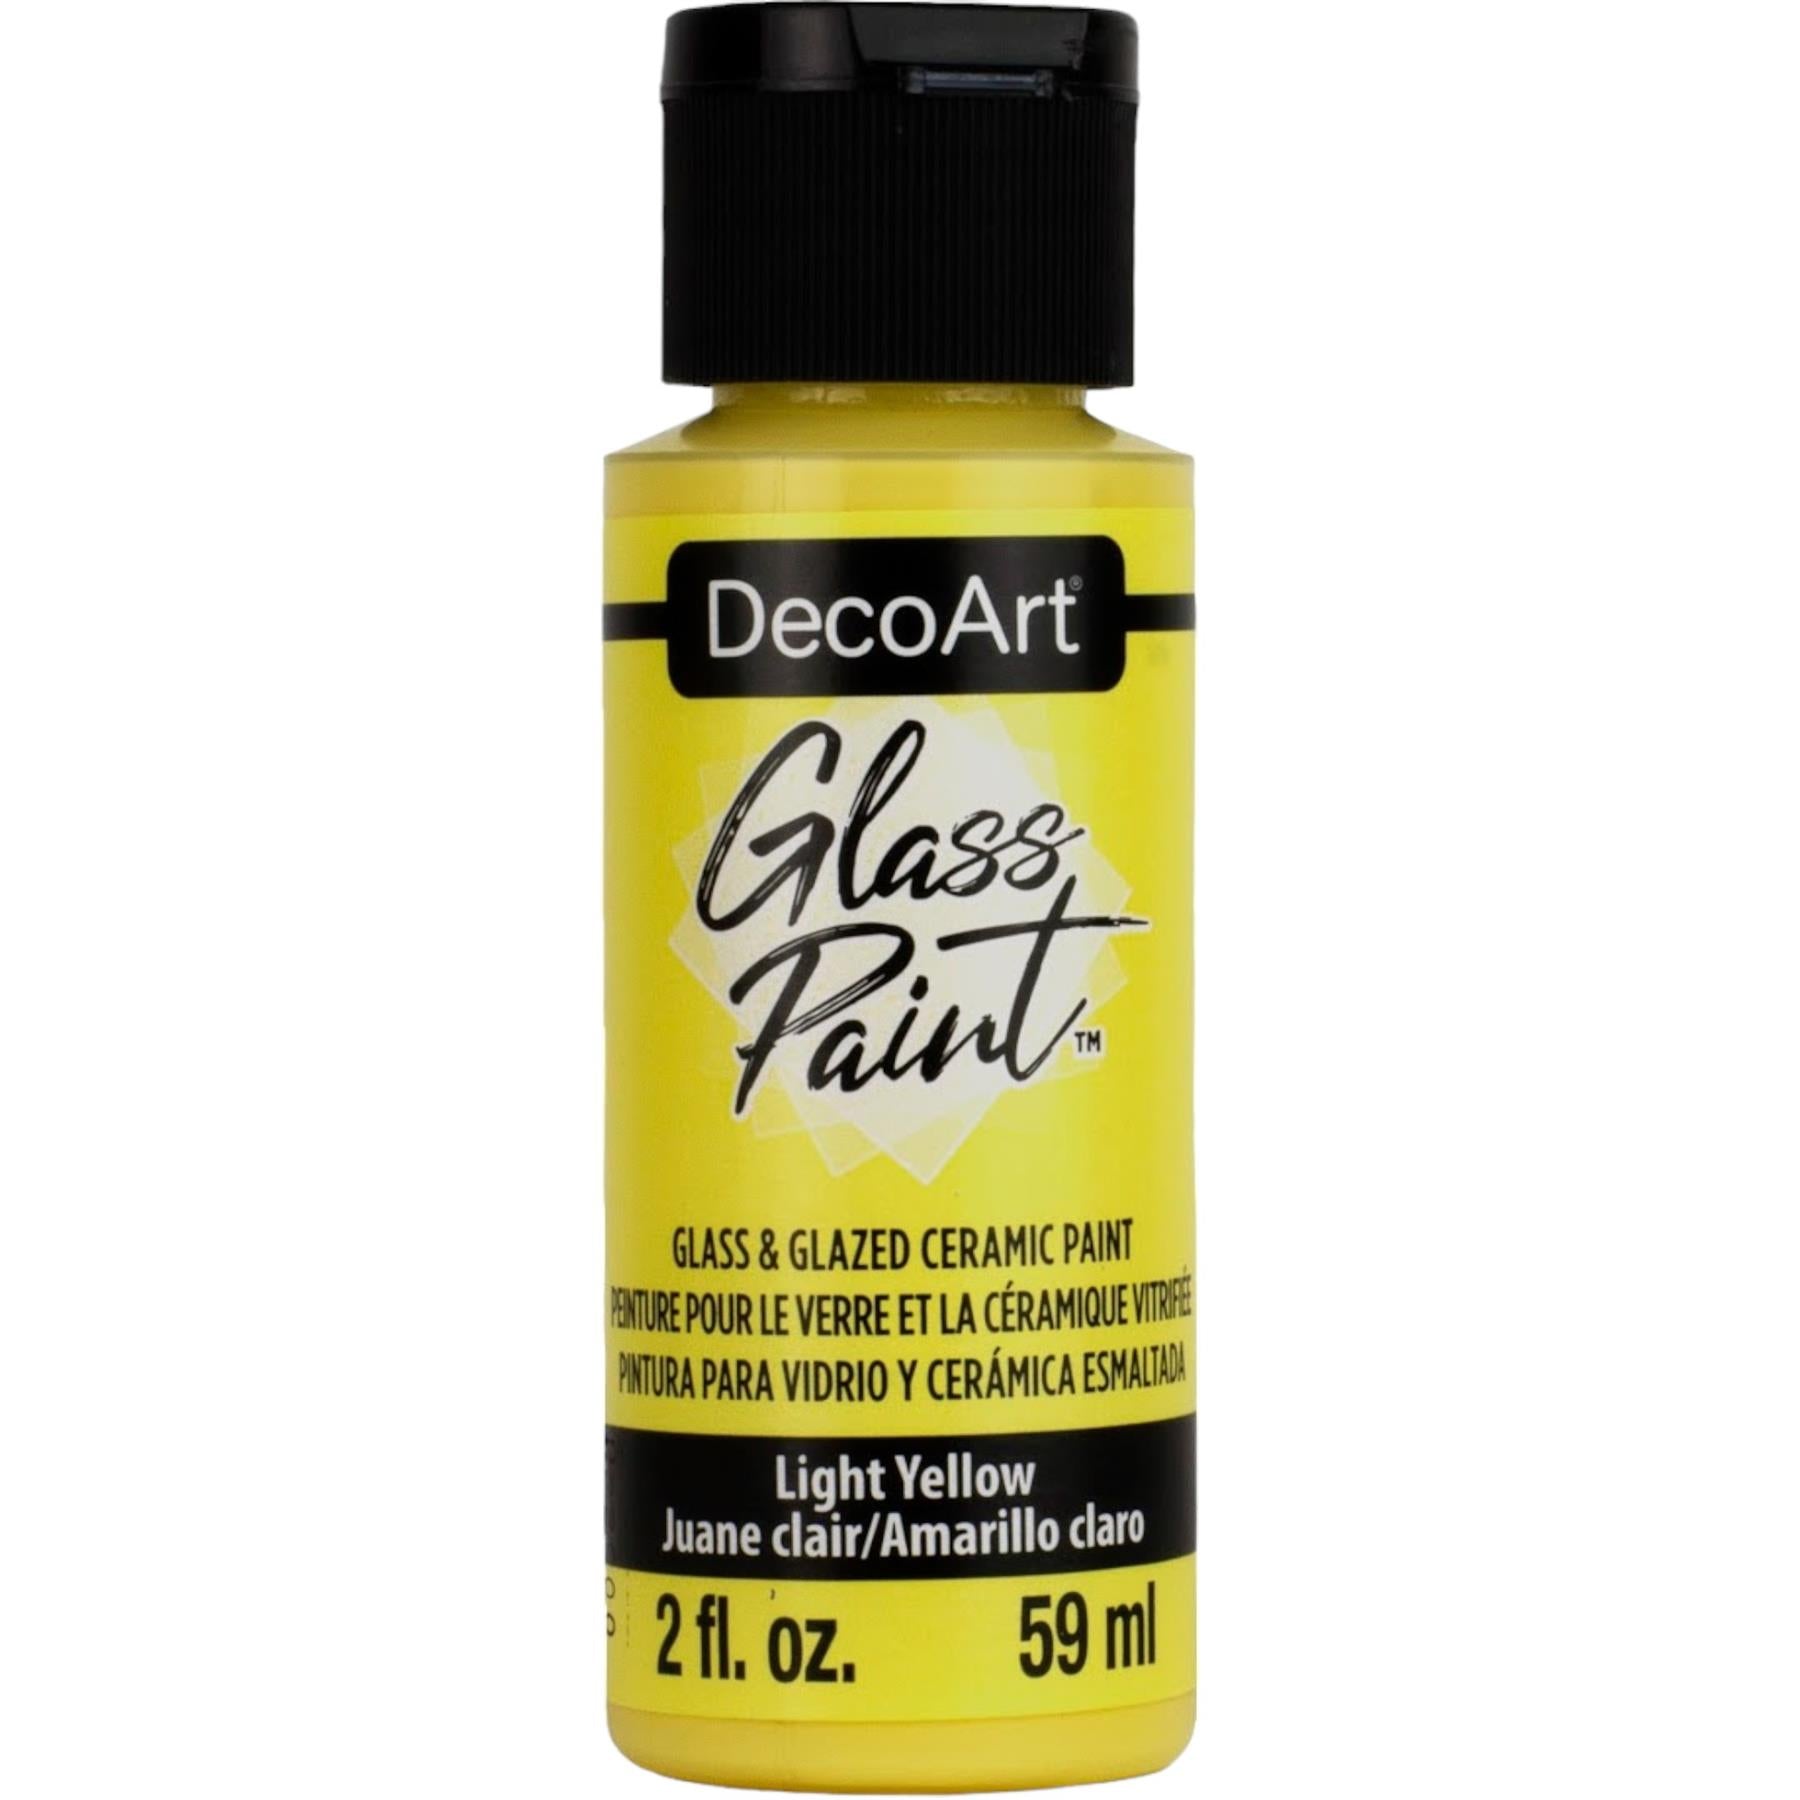 DecoArt Glass Paint